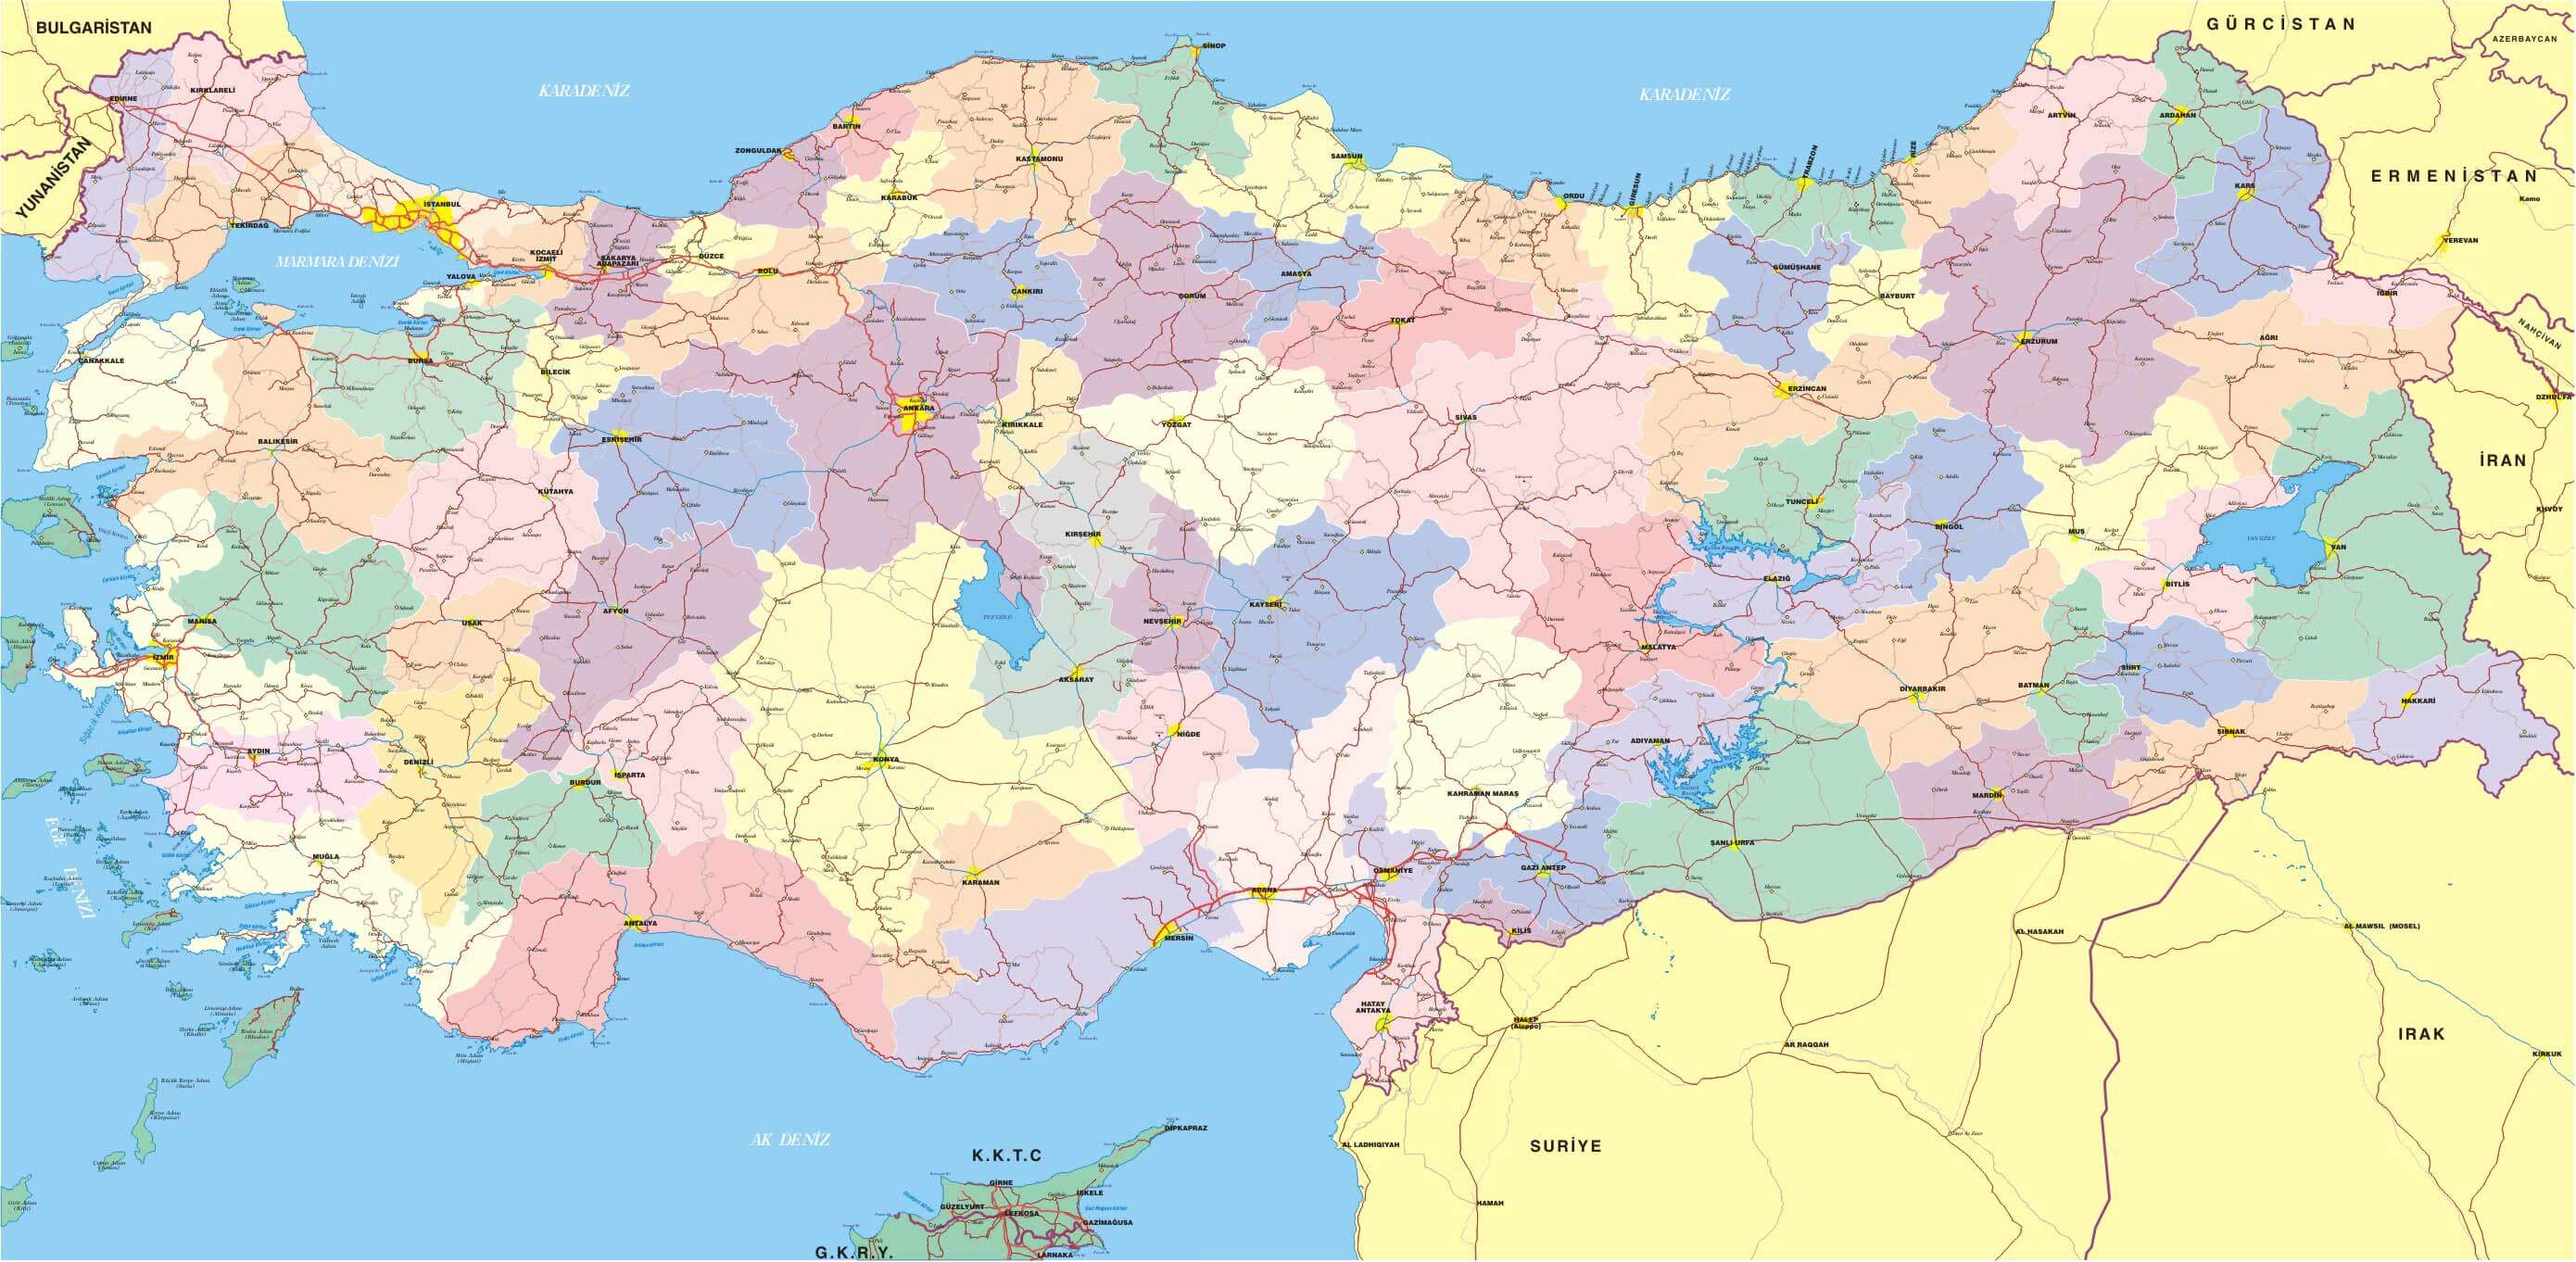 stadte karte von turkei